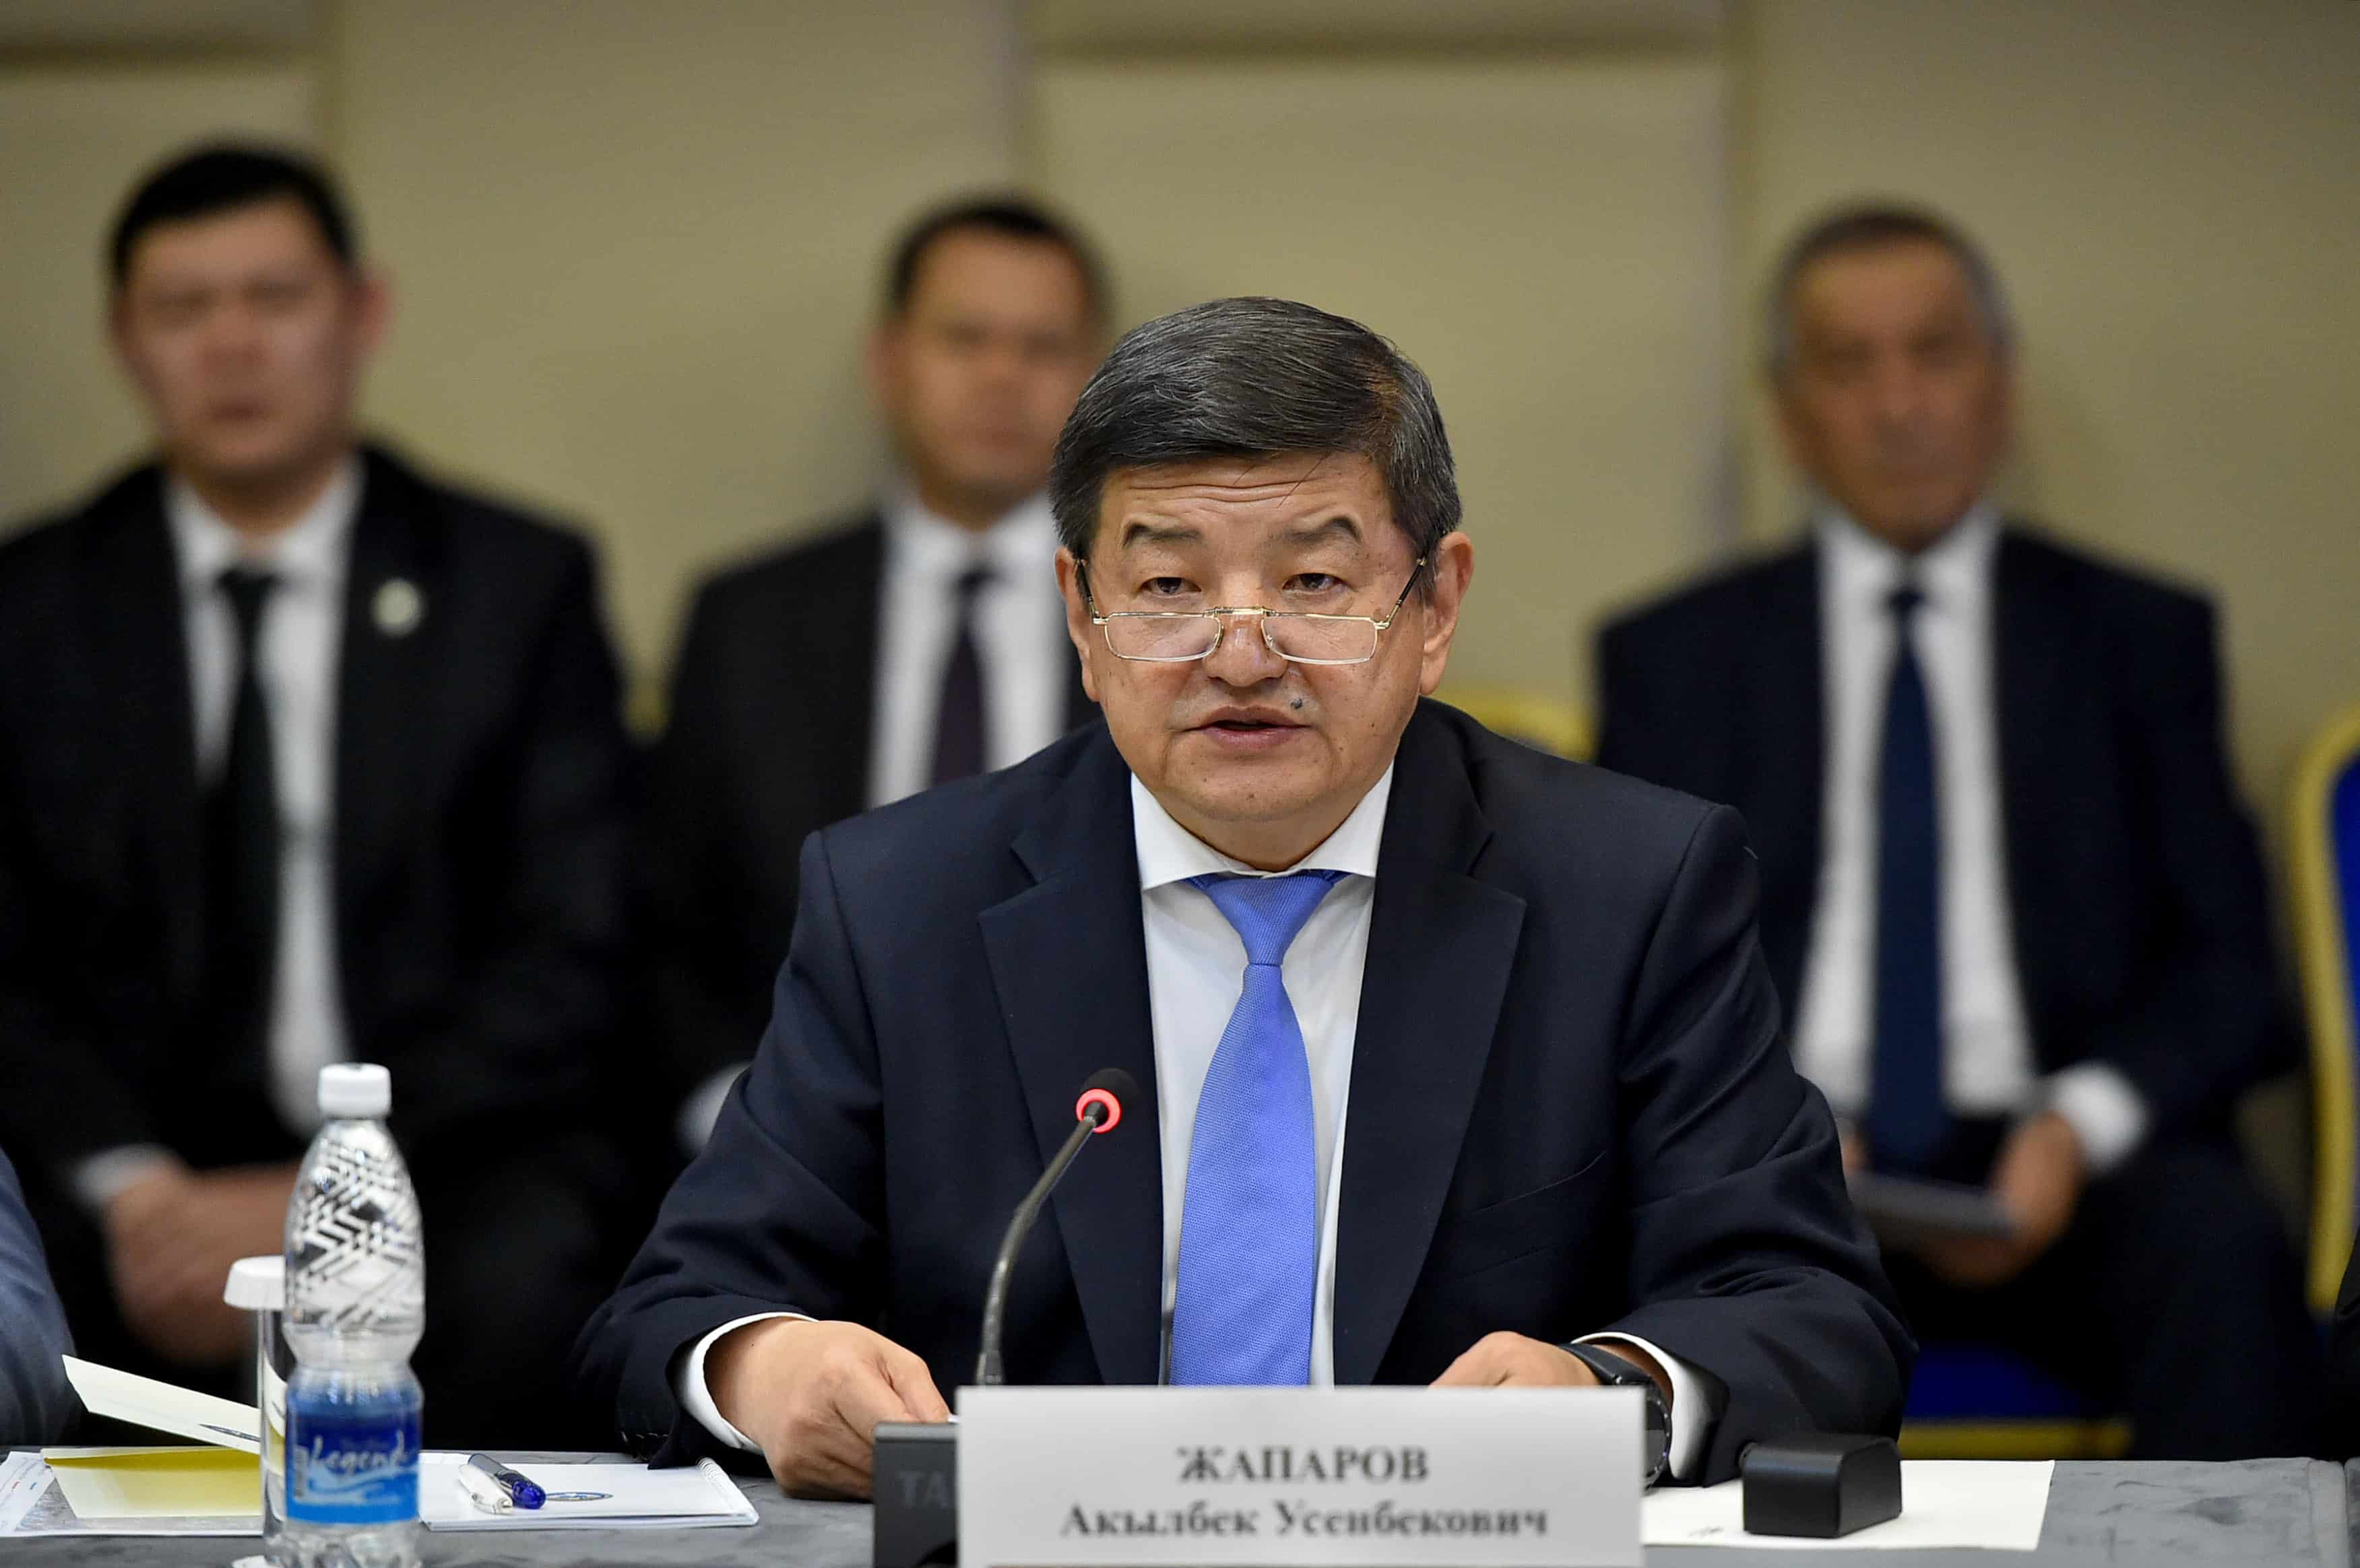 Кыргызстан и Узбекистан нацелены на доведение товарооборота до $2 млрд – Акылбек Жапаров